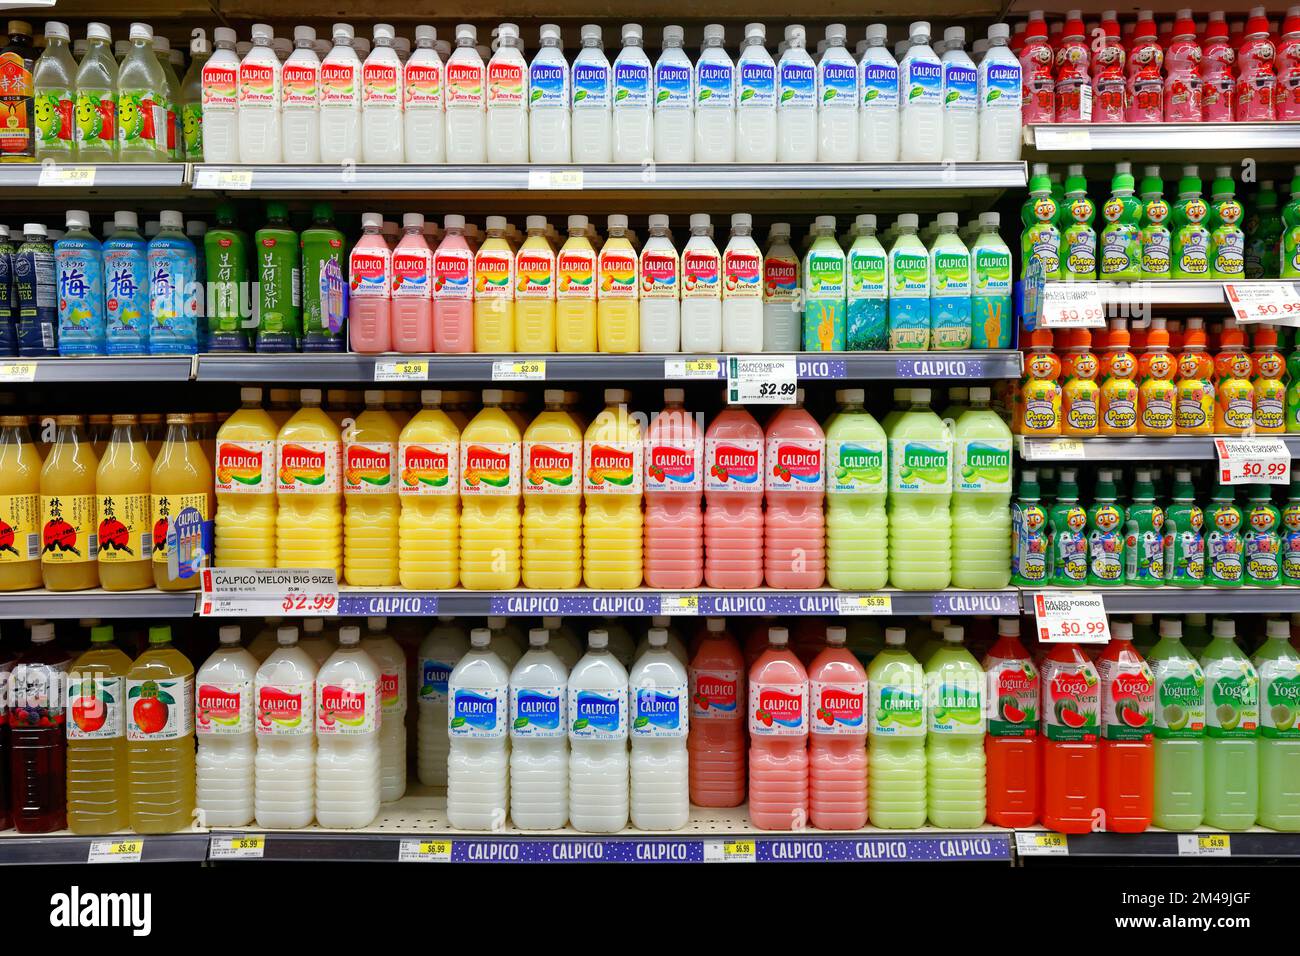 Bouteilles de boisson non alcoolisée à base de lait Calpico sur une étagère de supermarché dans une épicerie asiatique. Banque D'Images